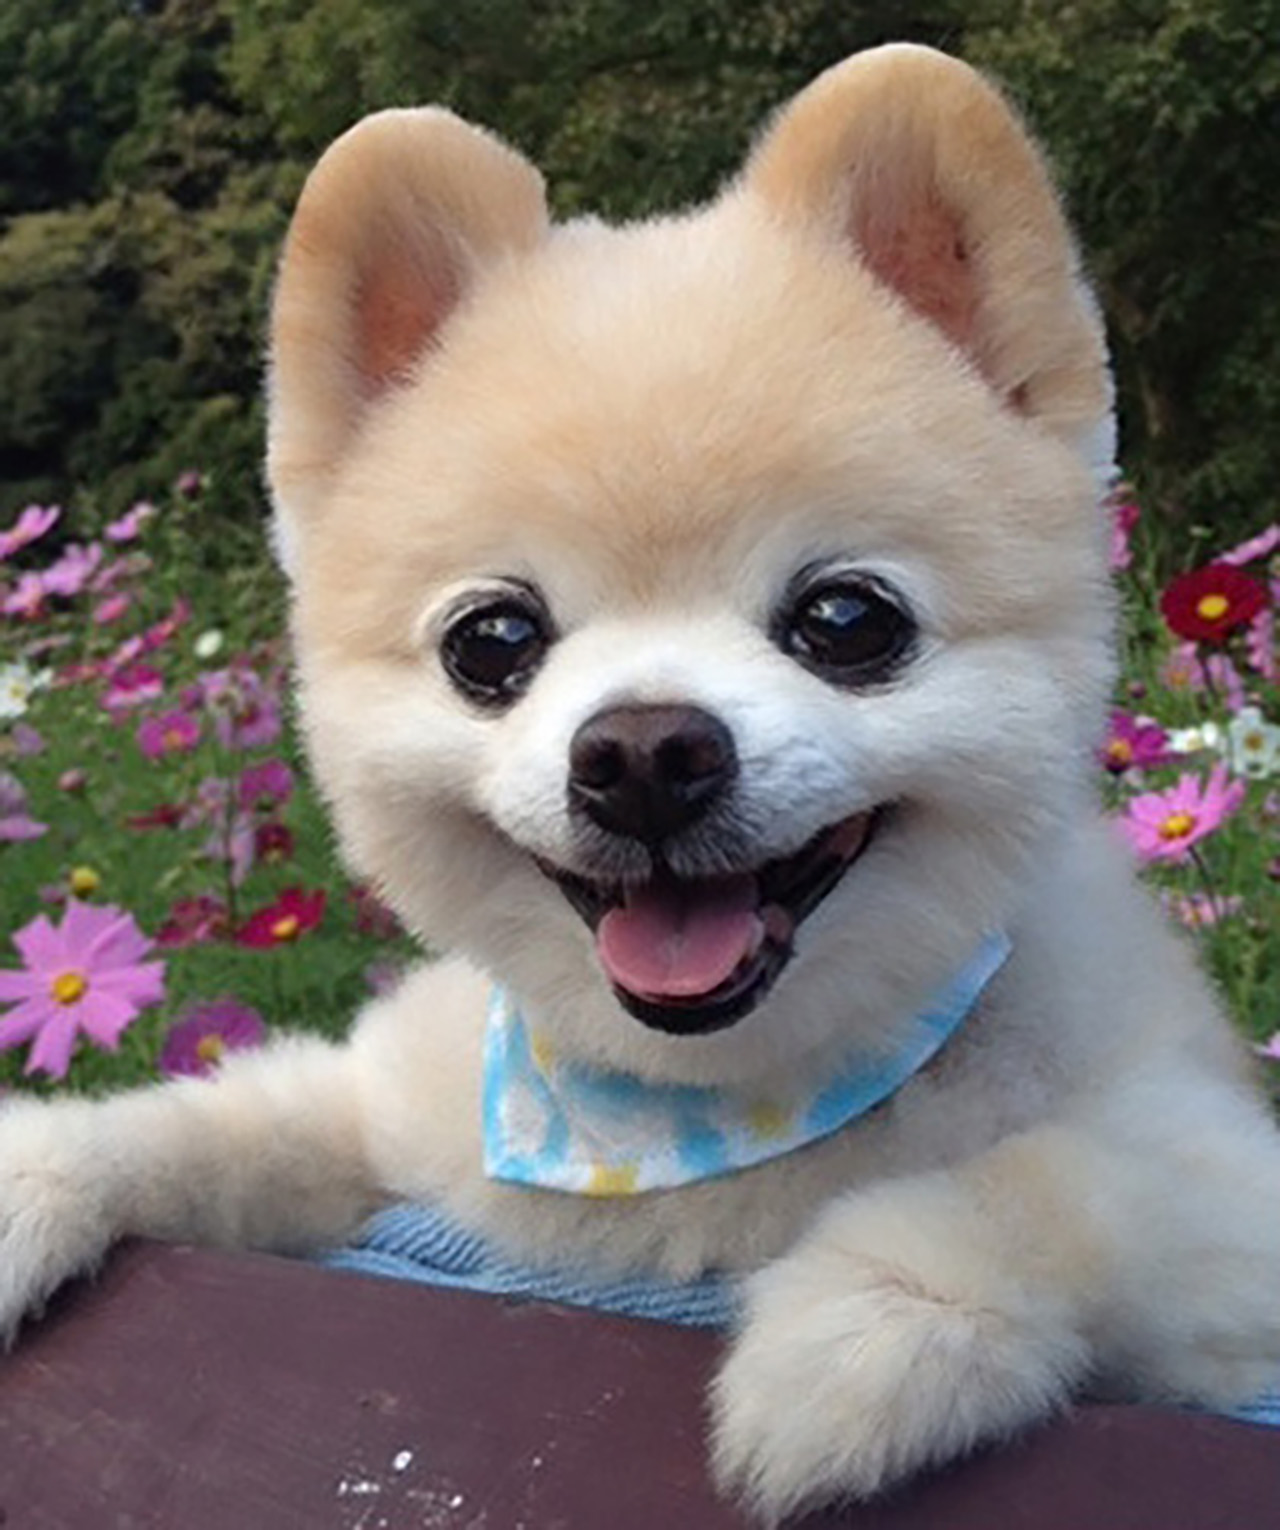 Sns세상]세상에서 가장 귀여운 강아지 '슌스케' 무지개다리 건넜다 | Ytn